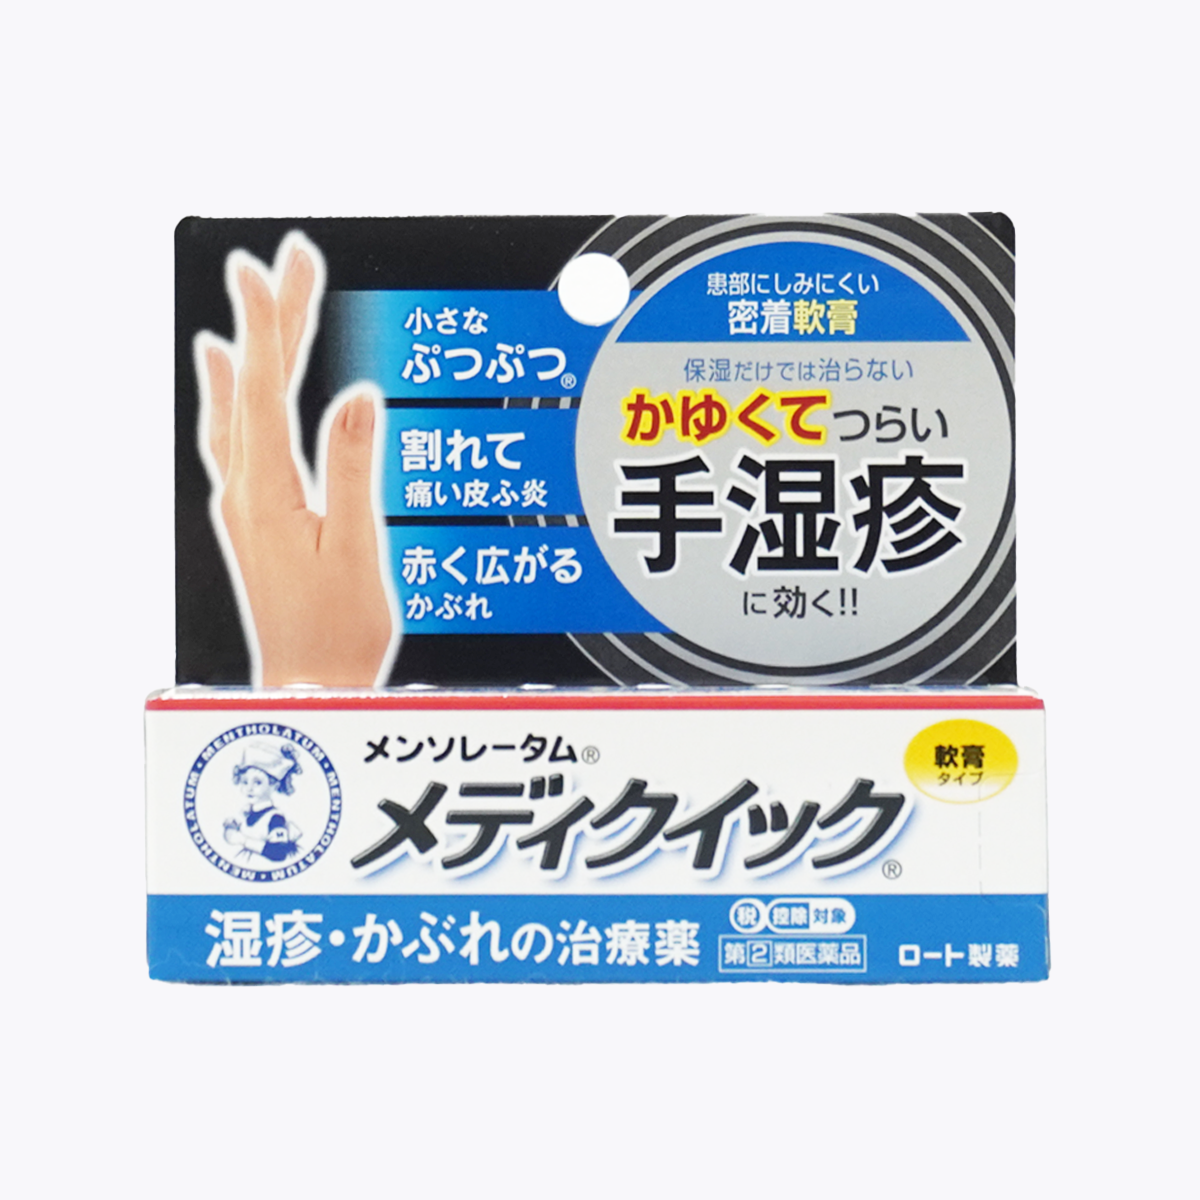 【第2類医薬品】ロート製薬 メンソレータム メディクイック軟膏R 8g